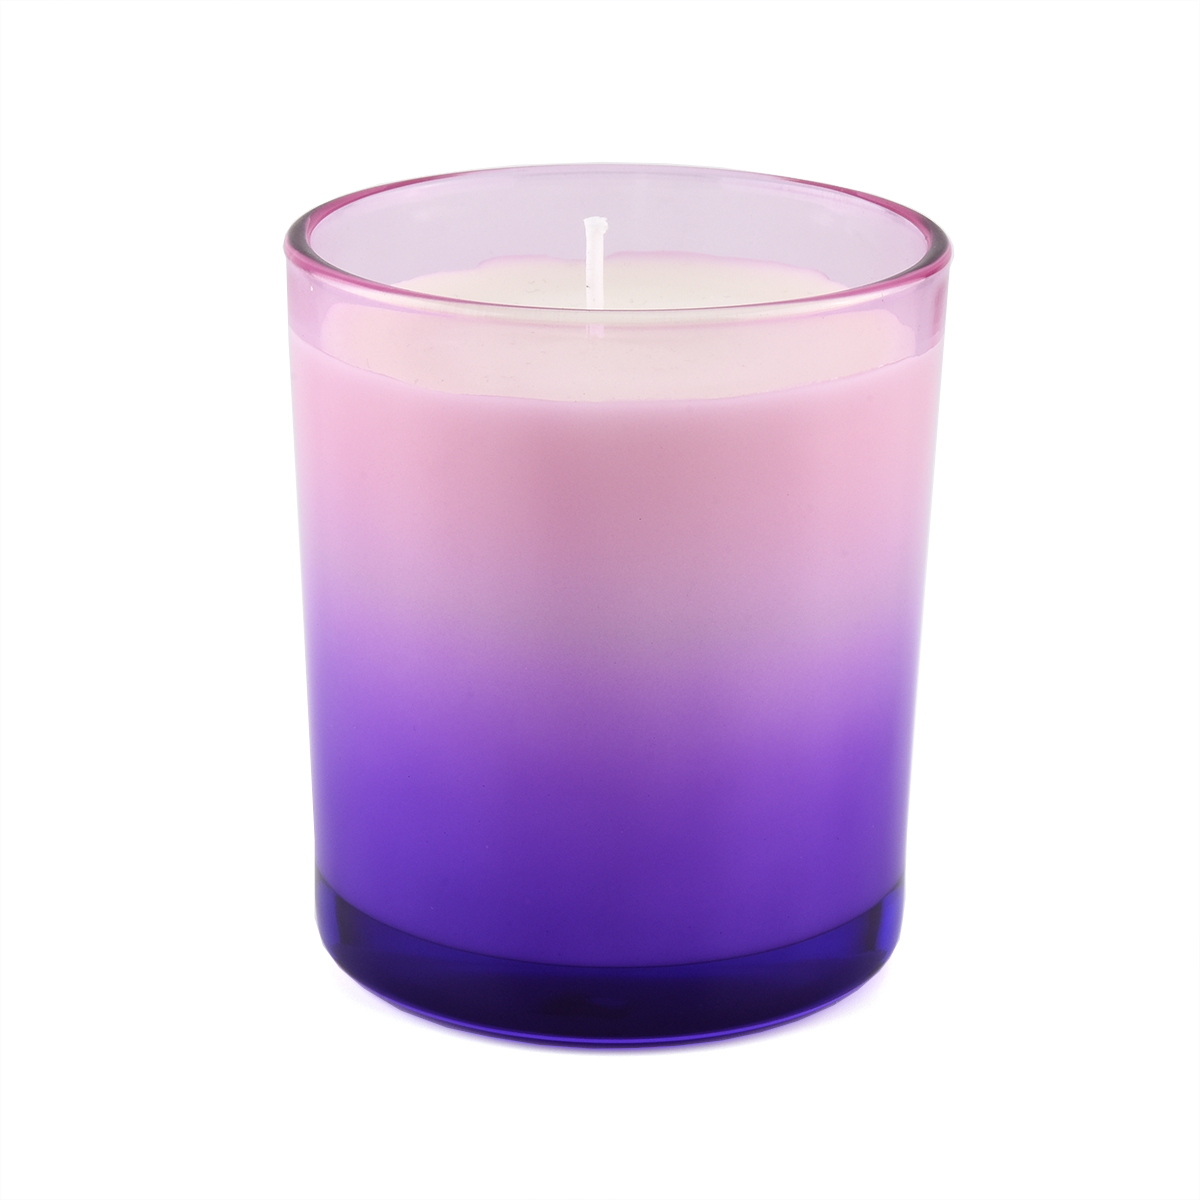 Gradient Colors 11oz glass candle jars - COPY - 4rqu7k